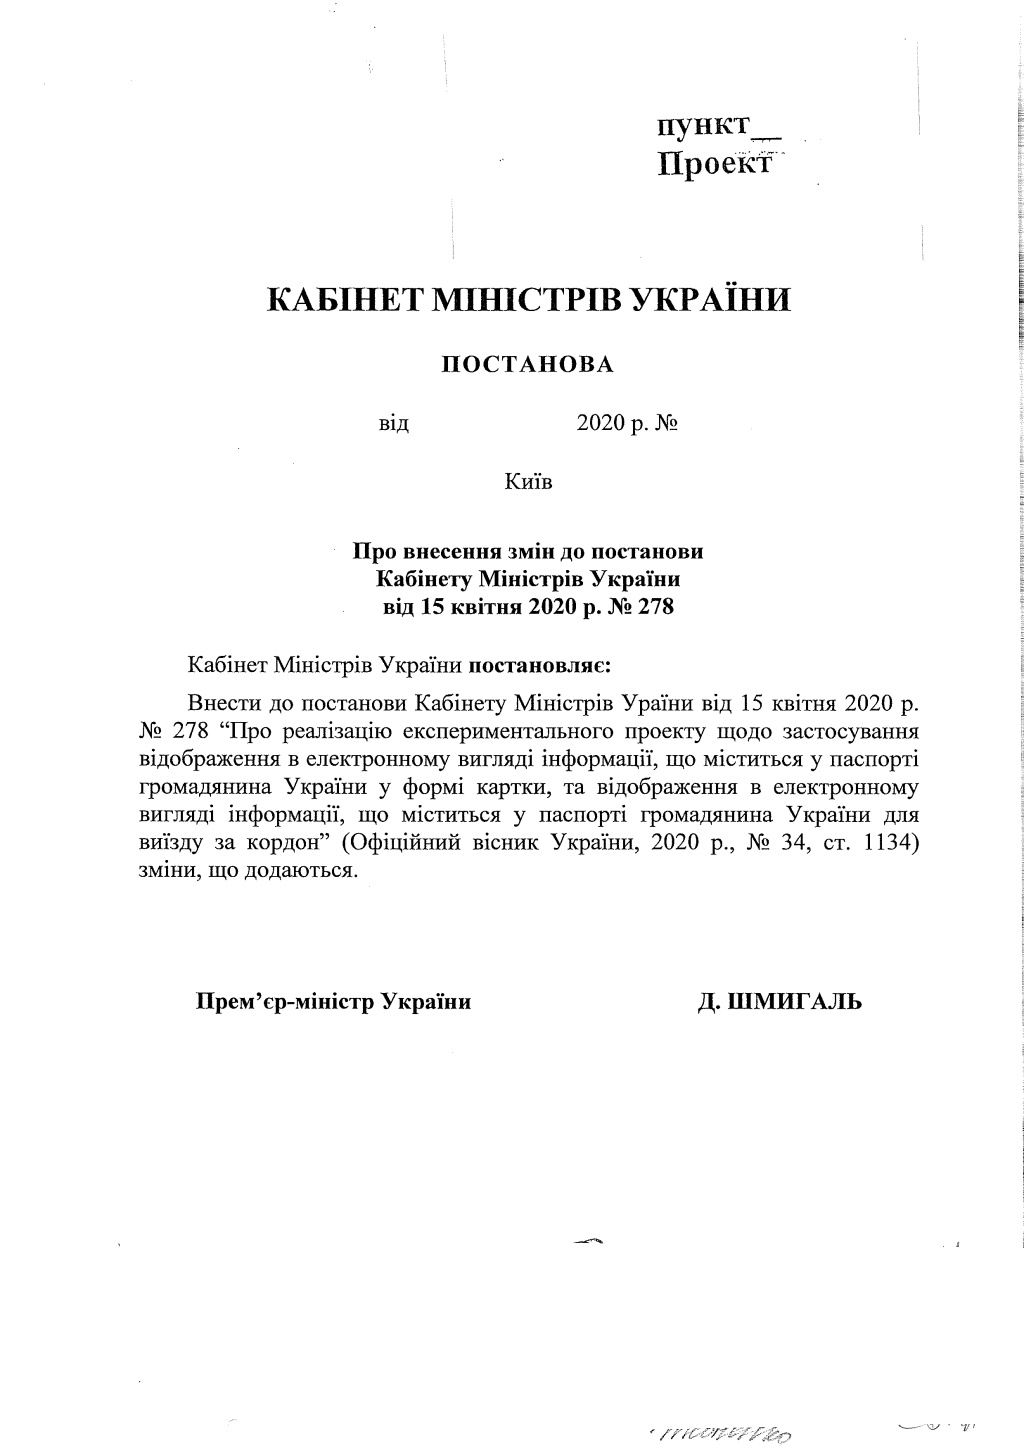 Кабинет министров Украины анонсировал расширение возможностей е-паспорта через приложение ”Дія”  - фото 2